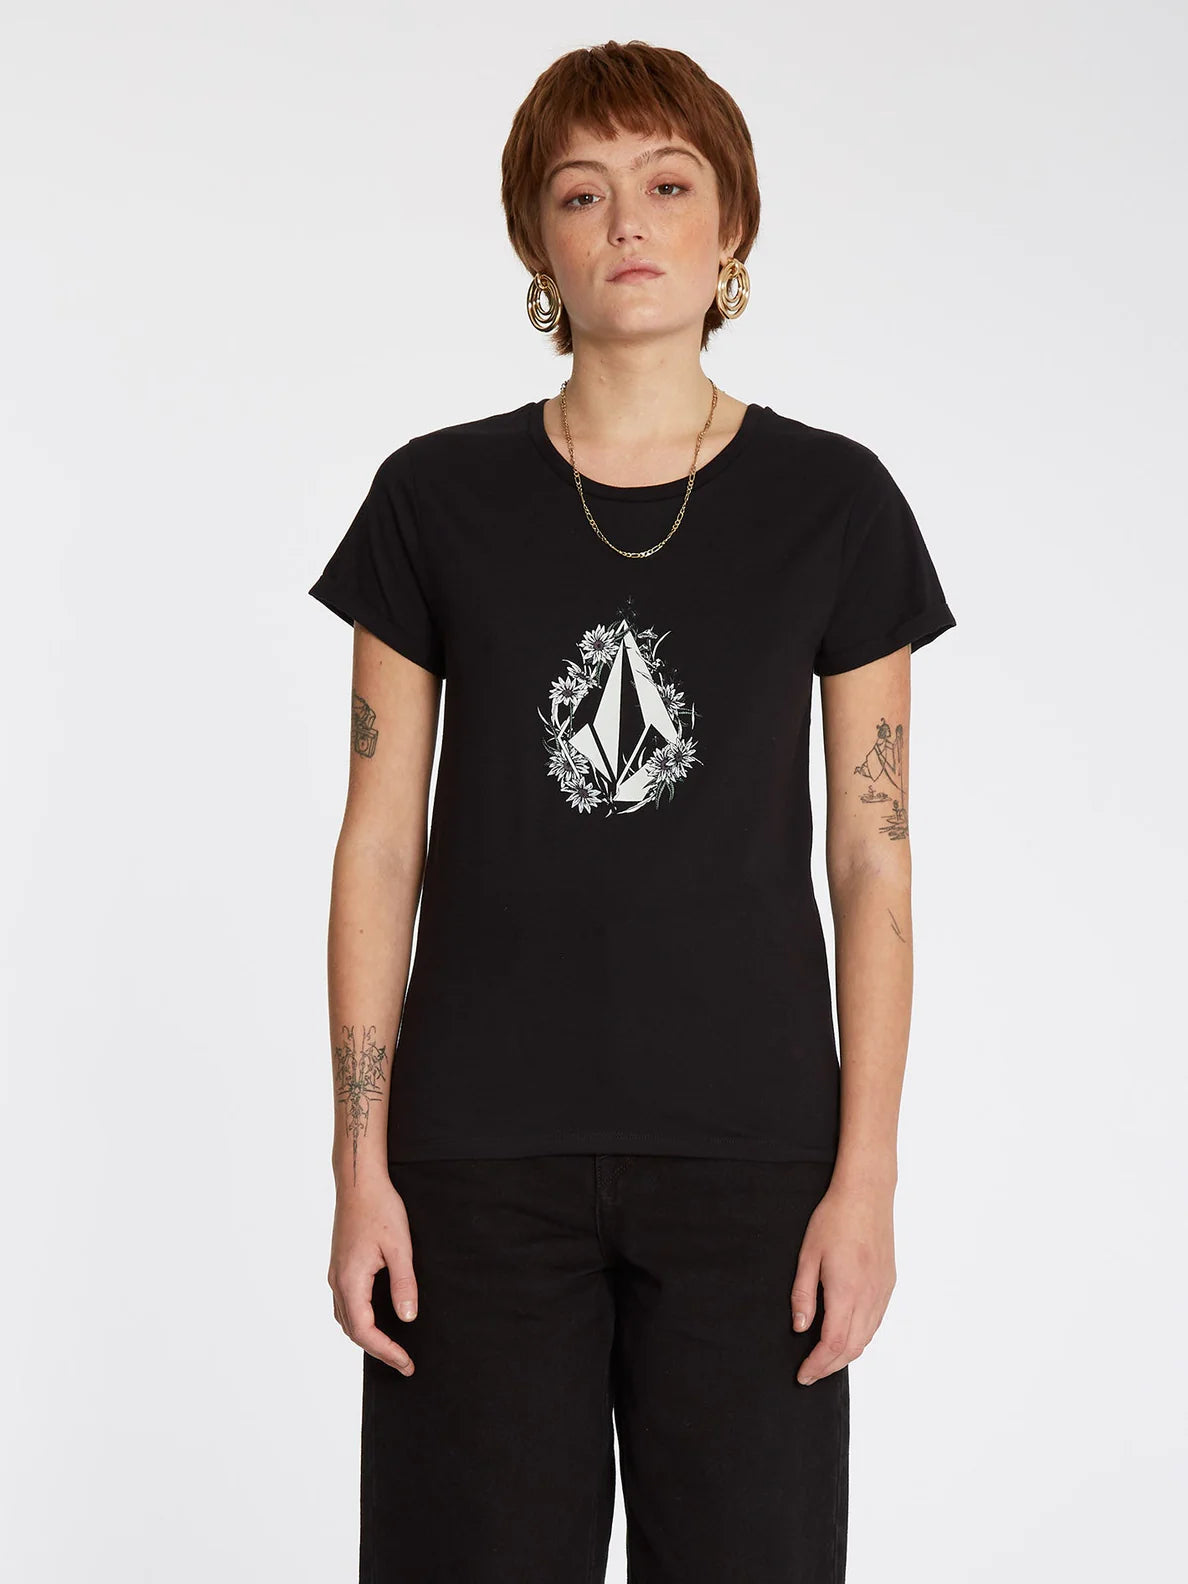 Camiseta Chica Volcom Radical Daze Tee Black | Camisetas manga corta de mujer | Volcom Shop | surfdevils.com